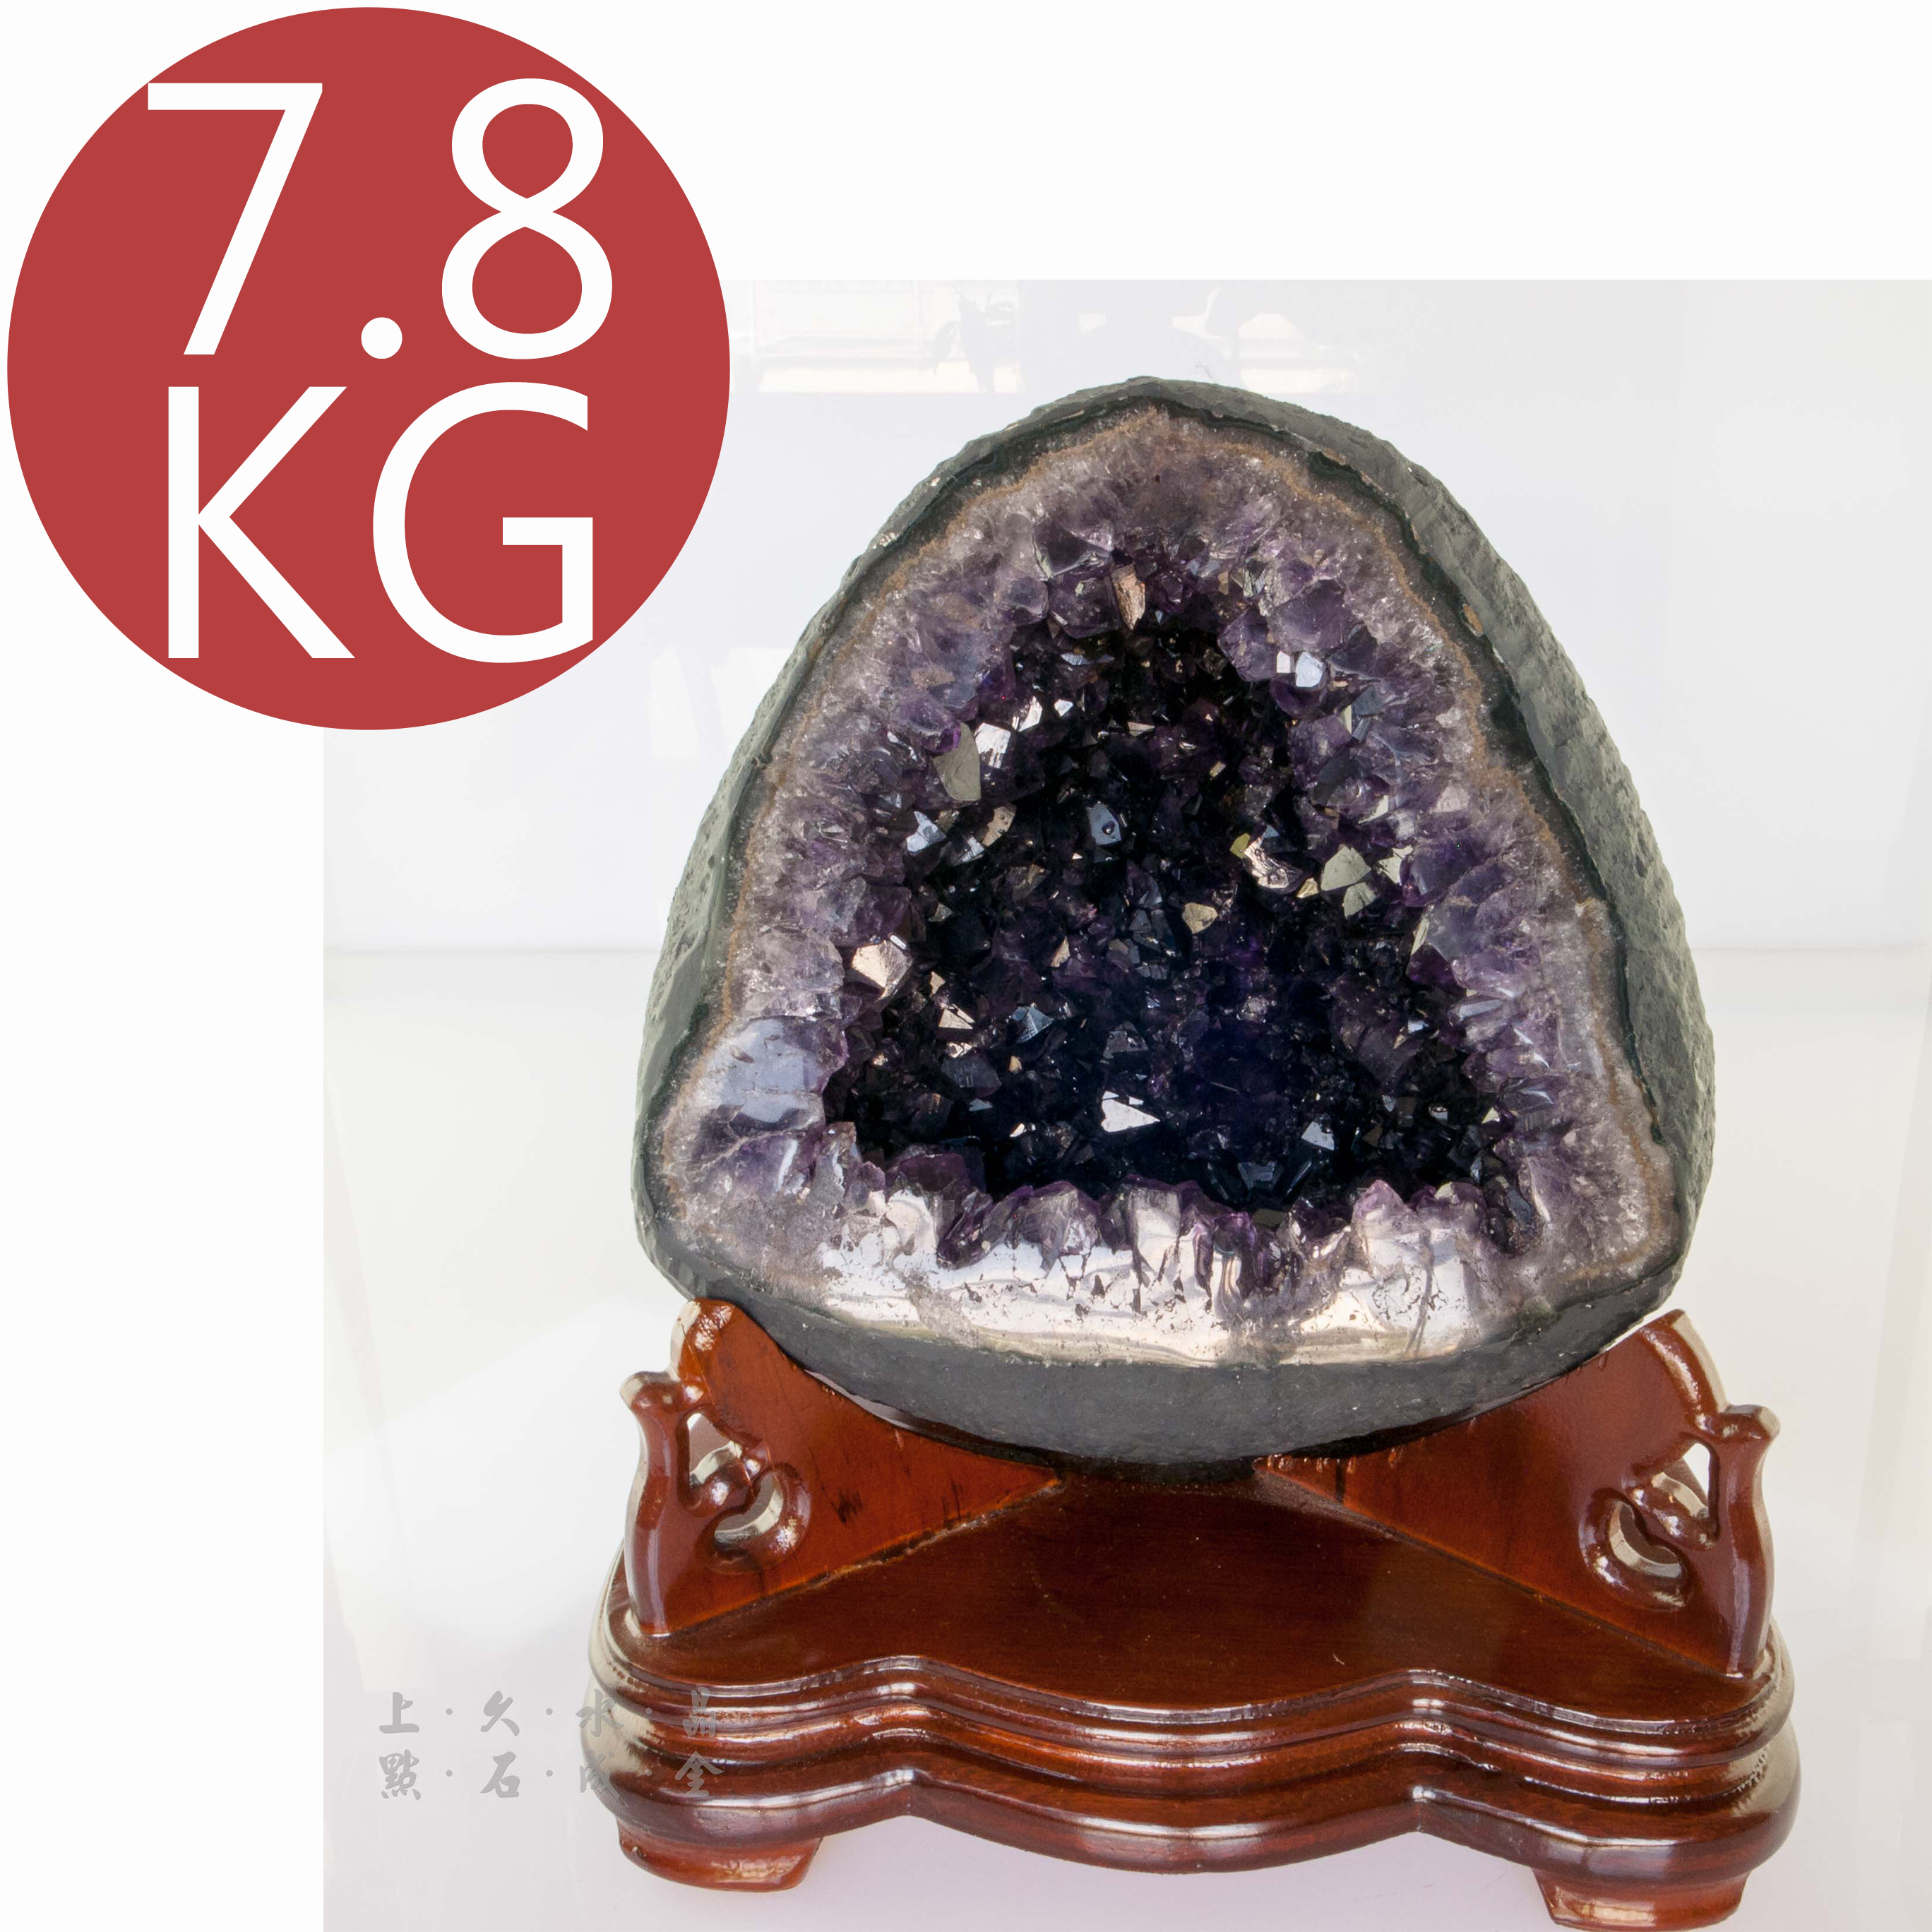 烏拉圭紫晶洞7.8公斤